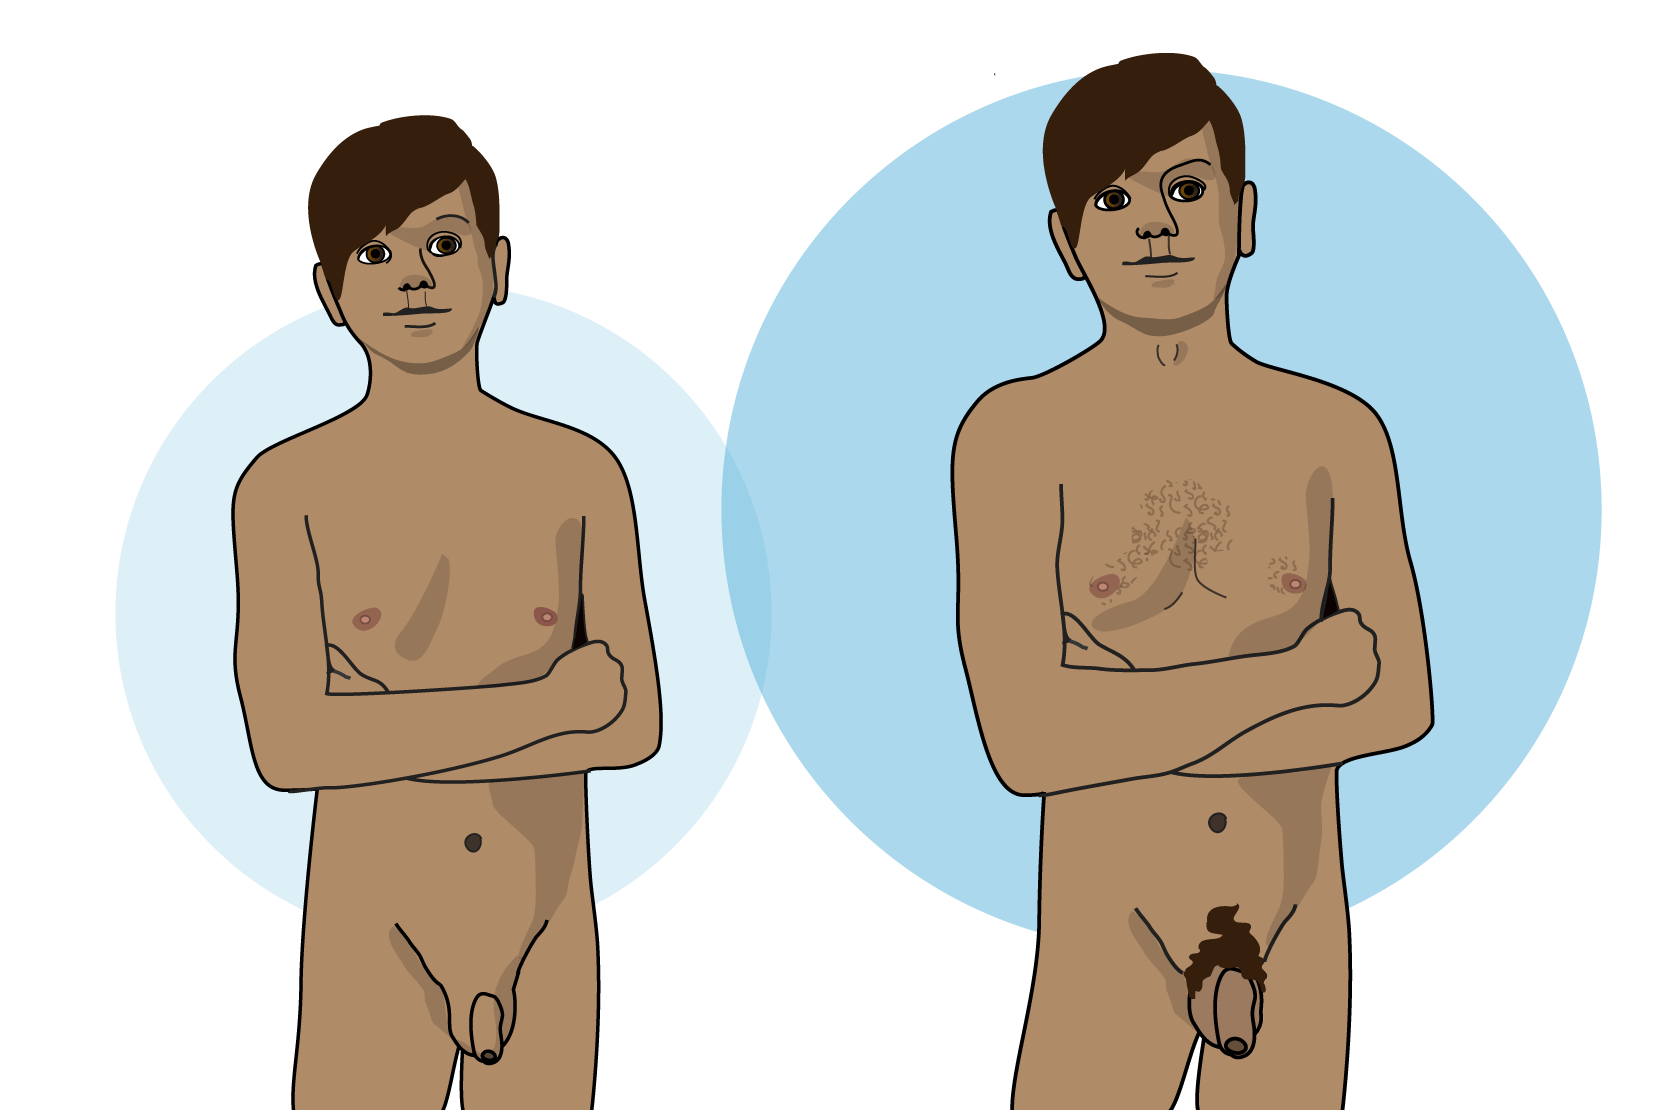 Illustration av en kille som inte har kommit i puberteten och en pil mot samma kille som har kommit i puberteten. Han till höger har bredare axlar, hårväxt på kroppen och större penis.